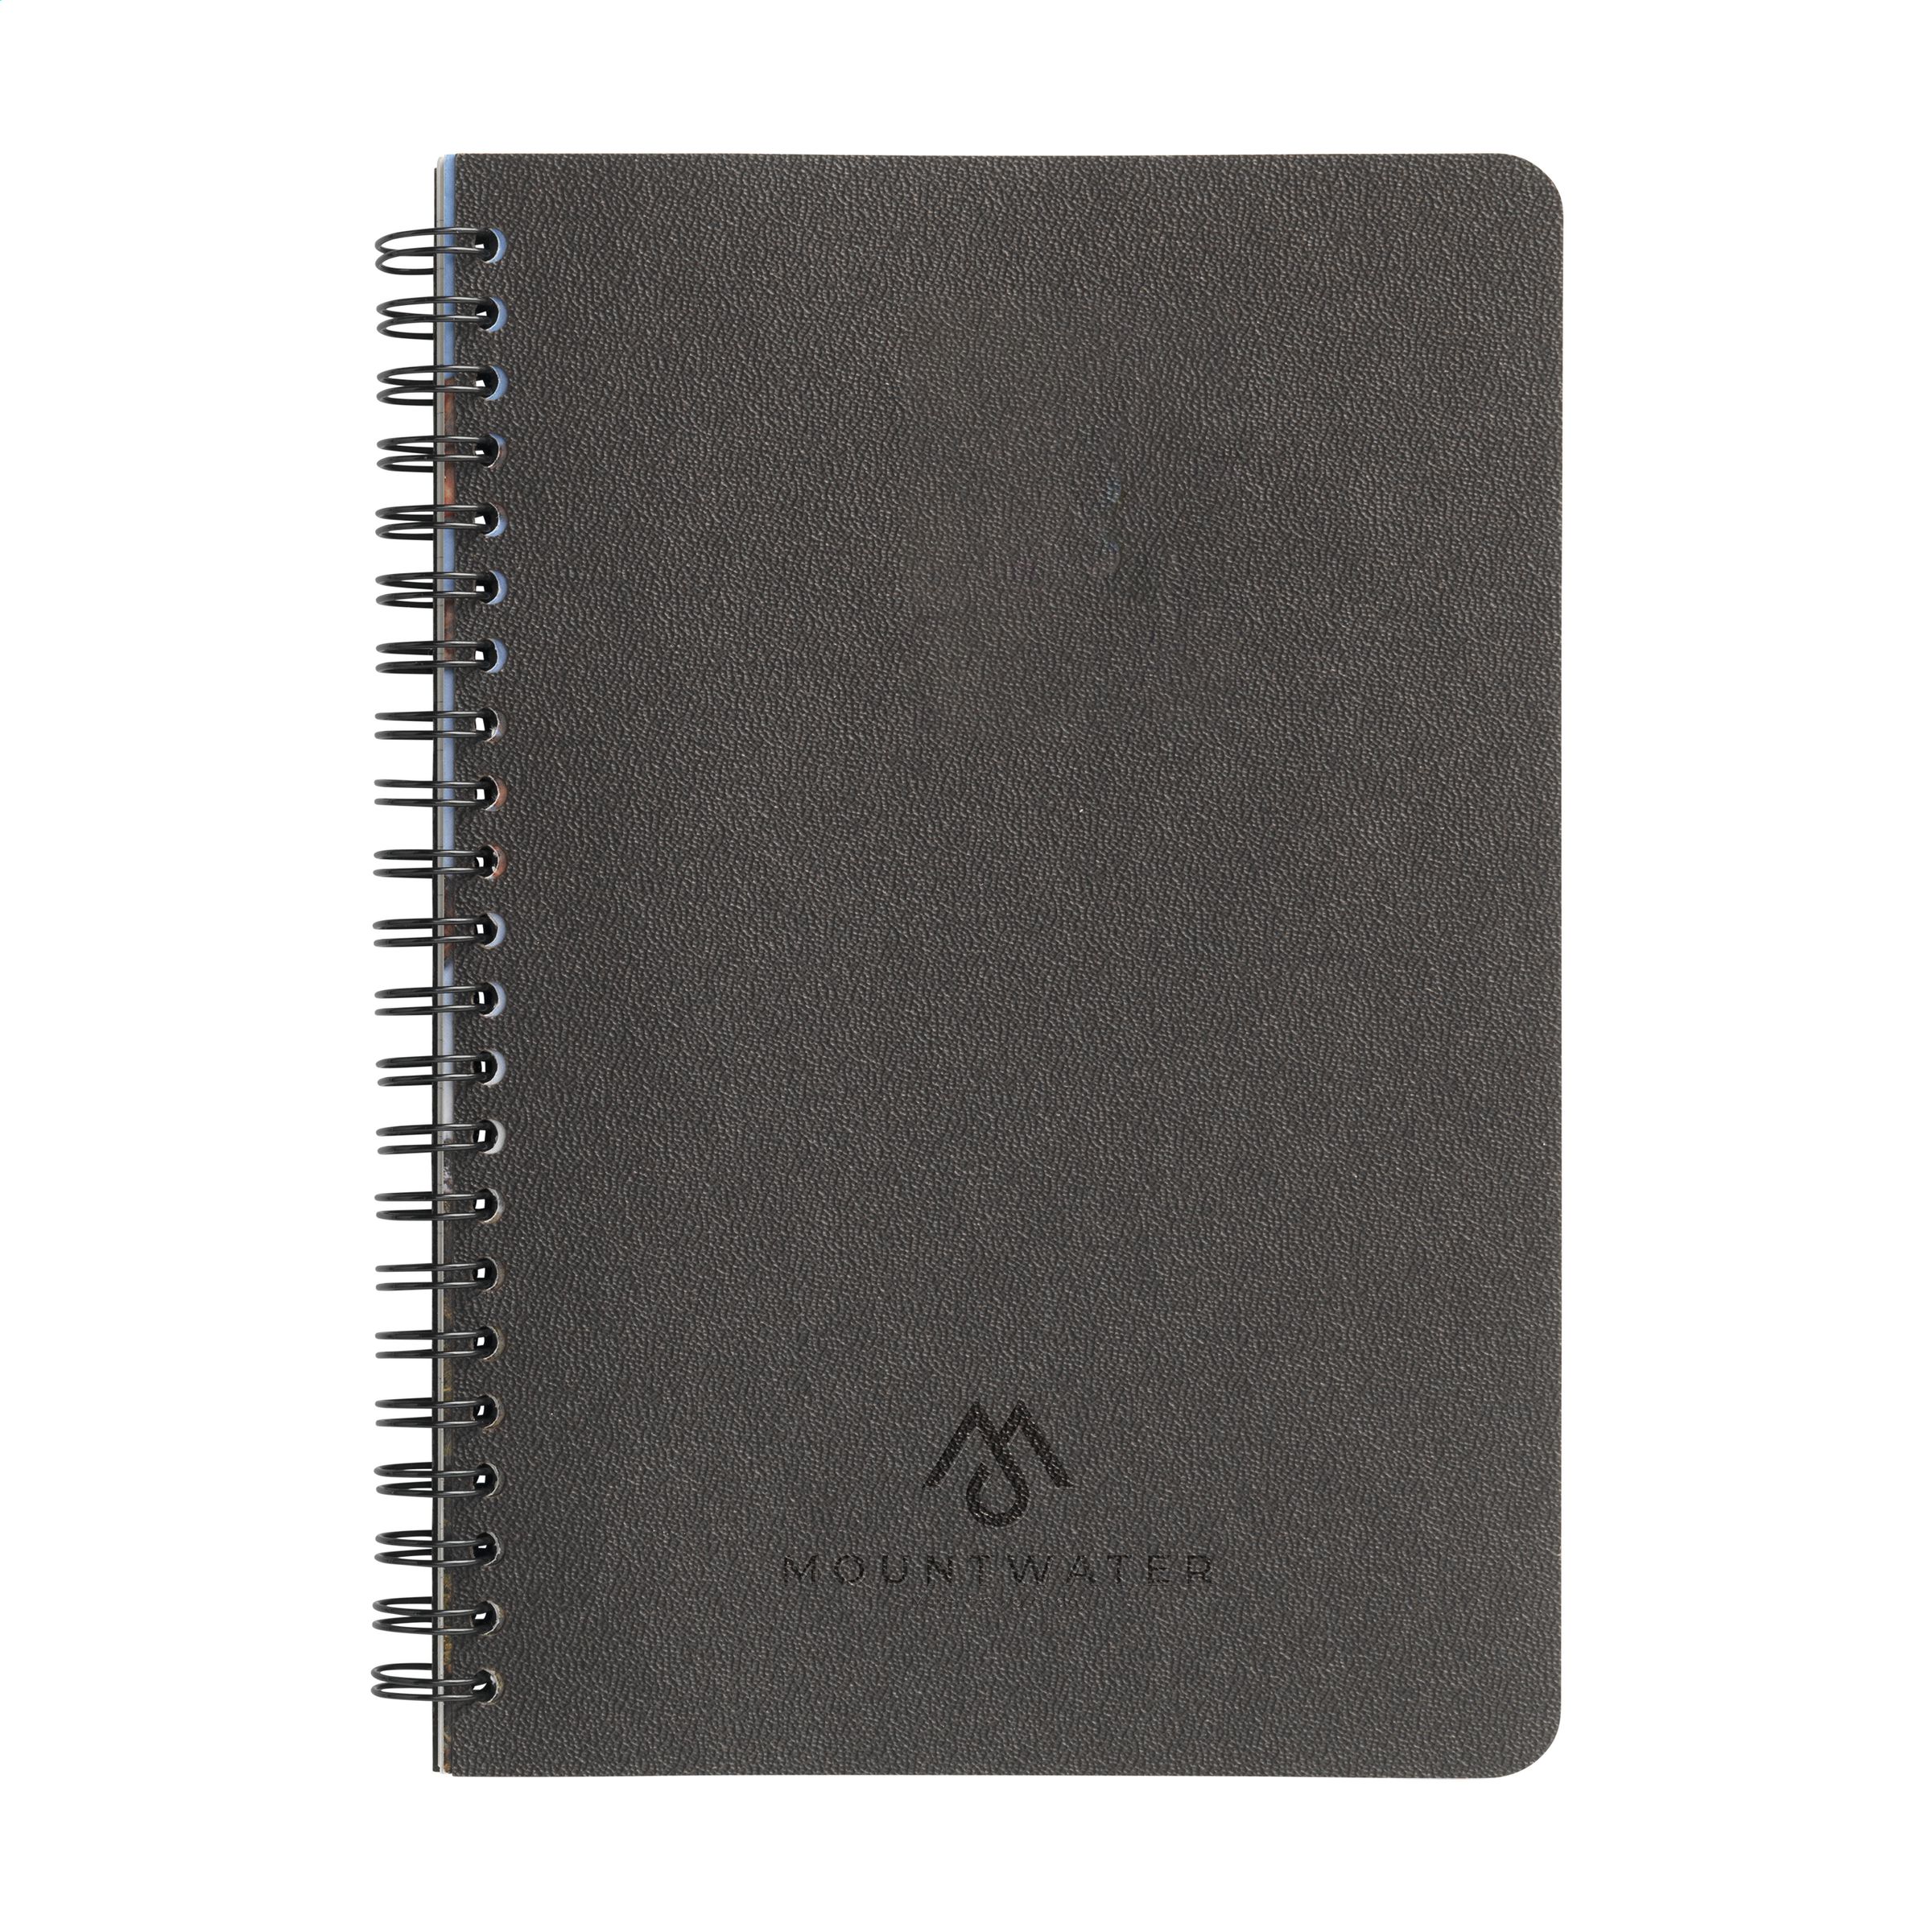 Notebook A5 biodegradable hecho de café molido - Wednesbury